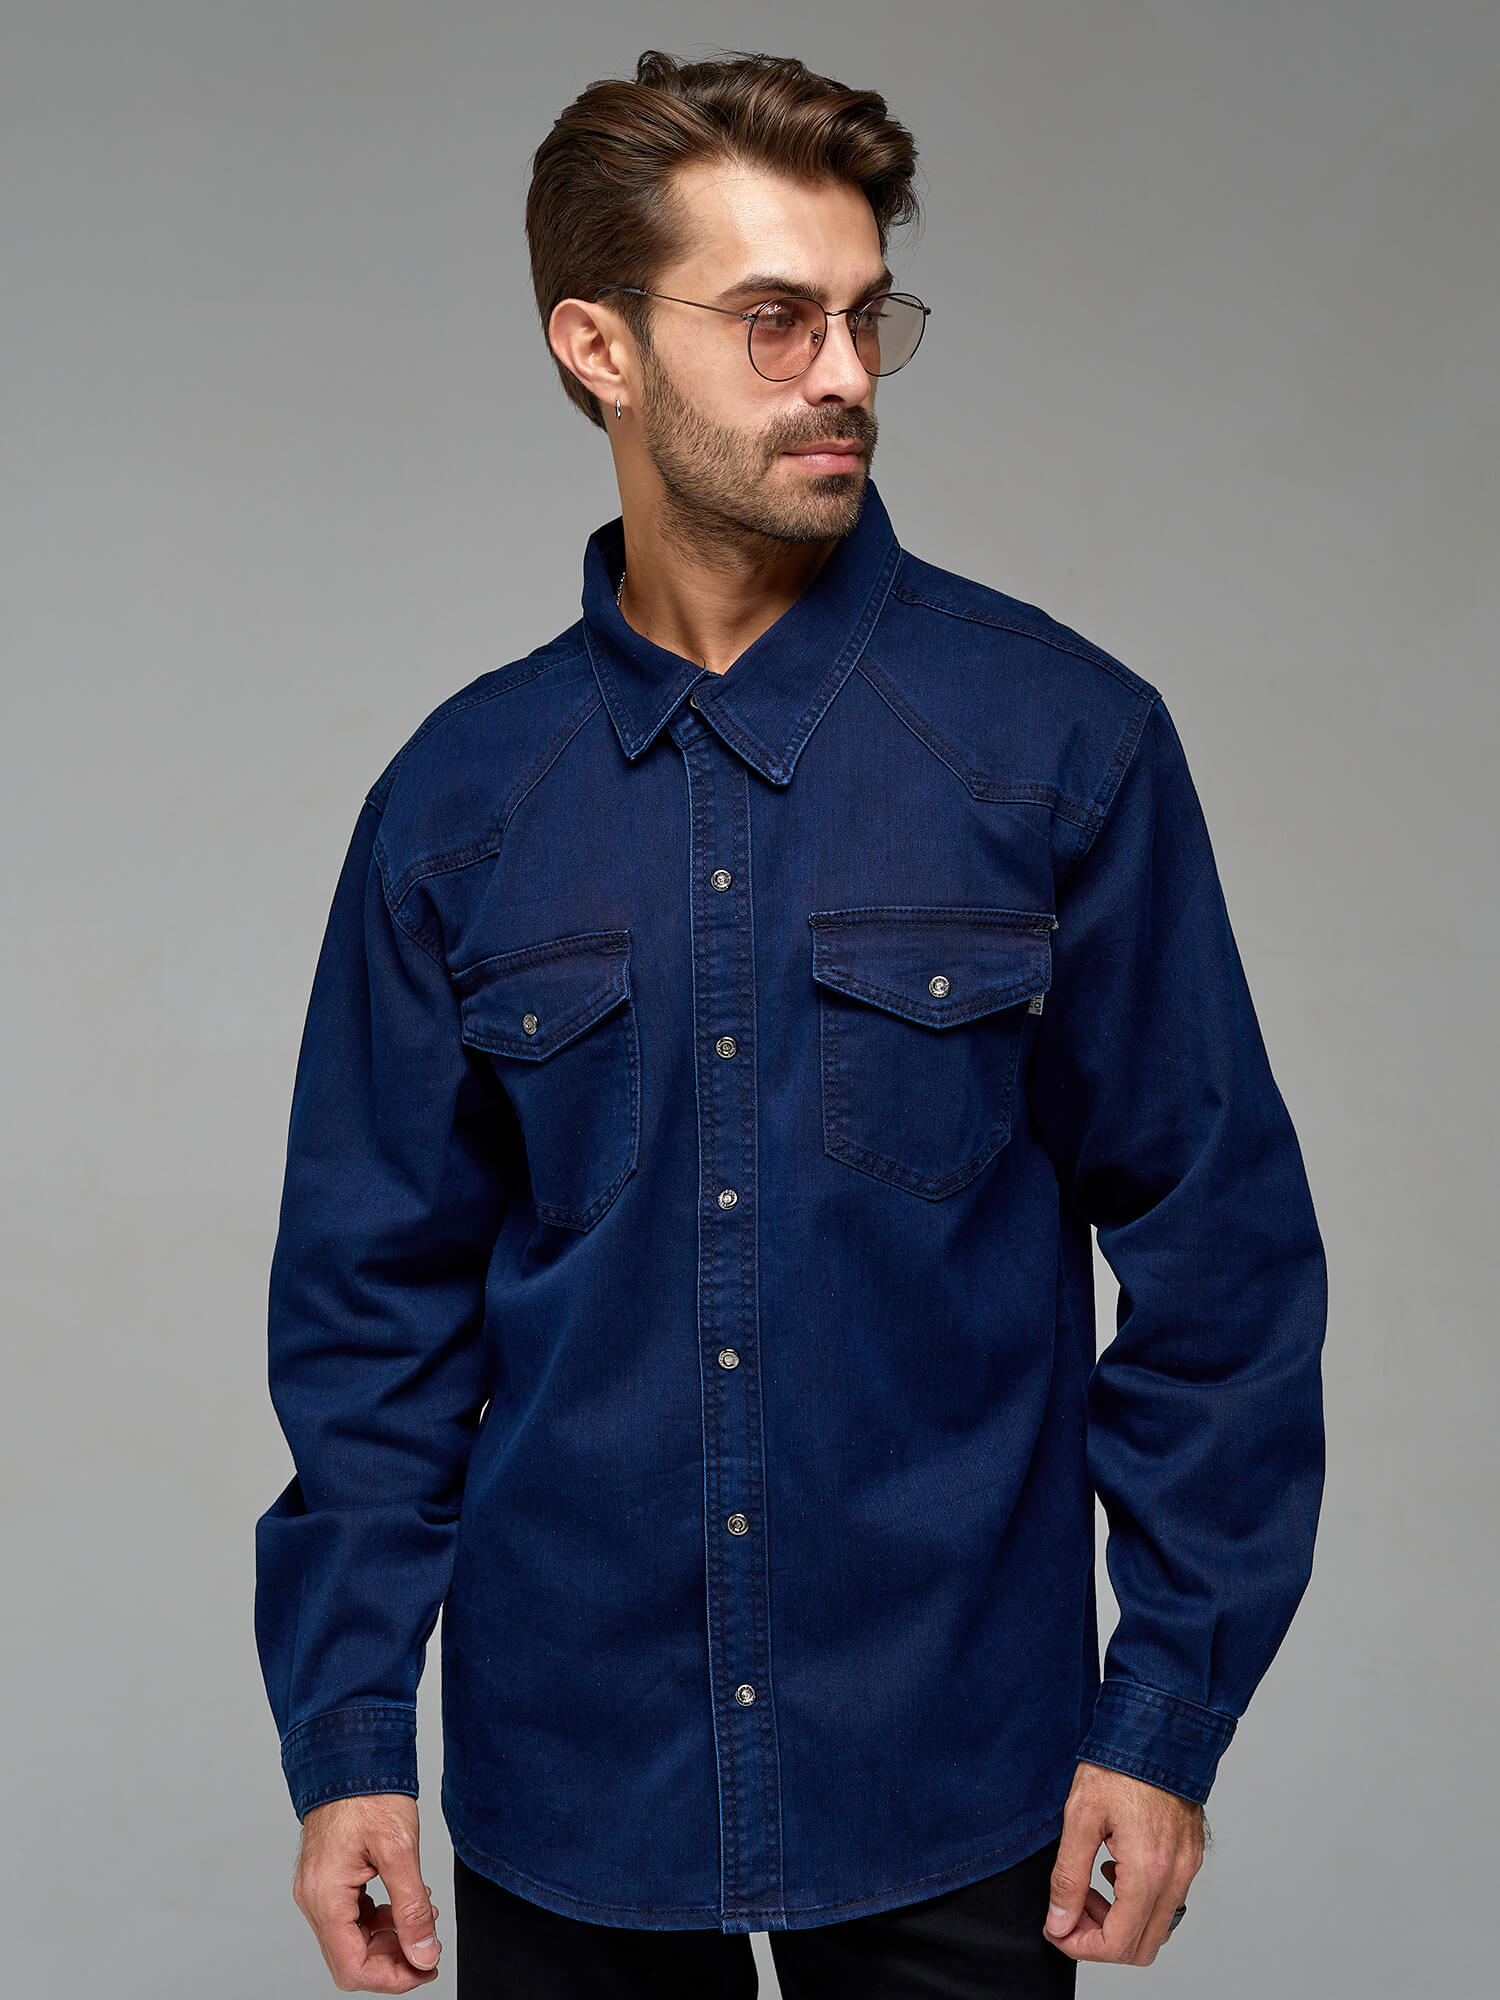 Съемка джинсовой рубашки на мужчине для маркетплейса 